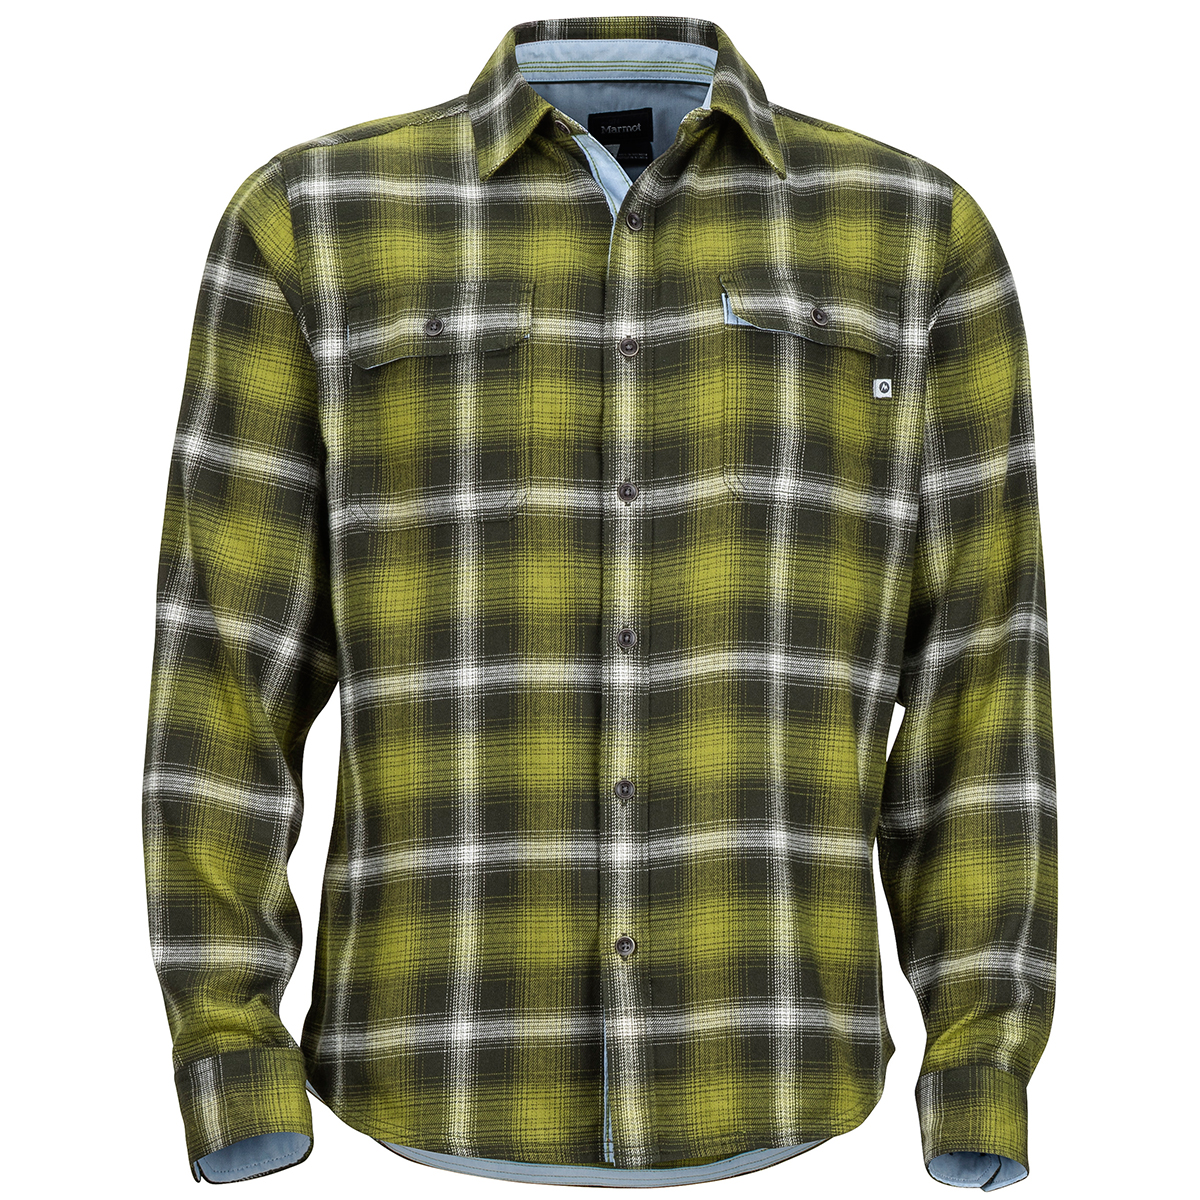 Marmot Men's Jasper Midweight Long-Sleeve Flannel Shirt - Green, L